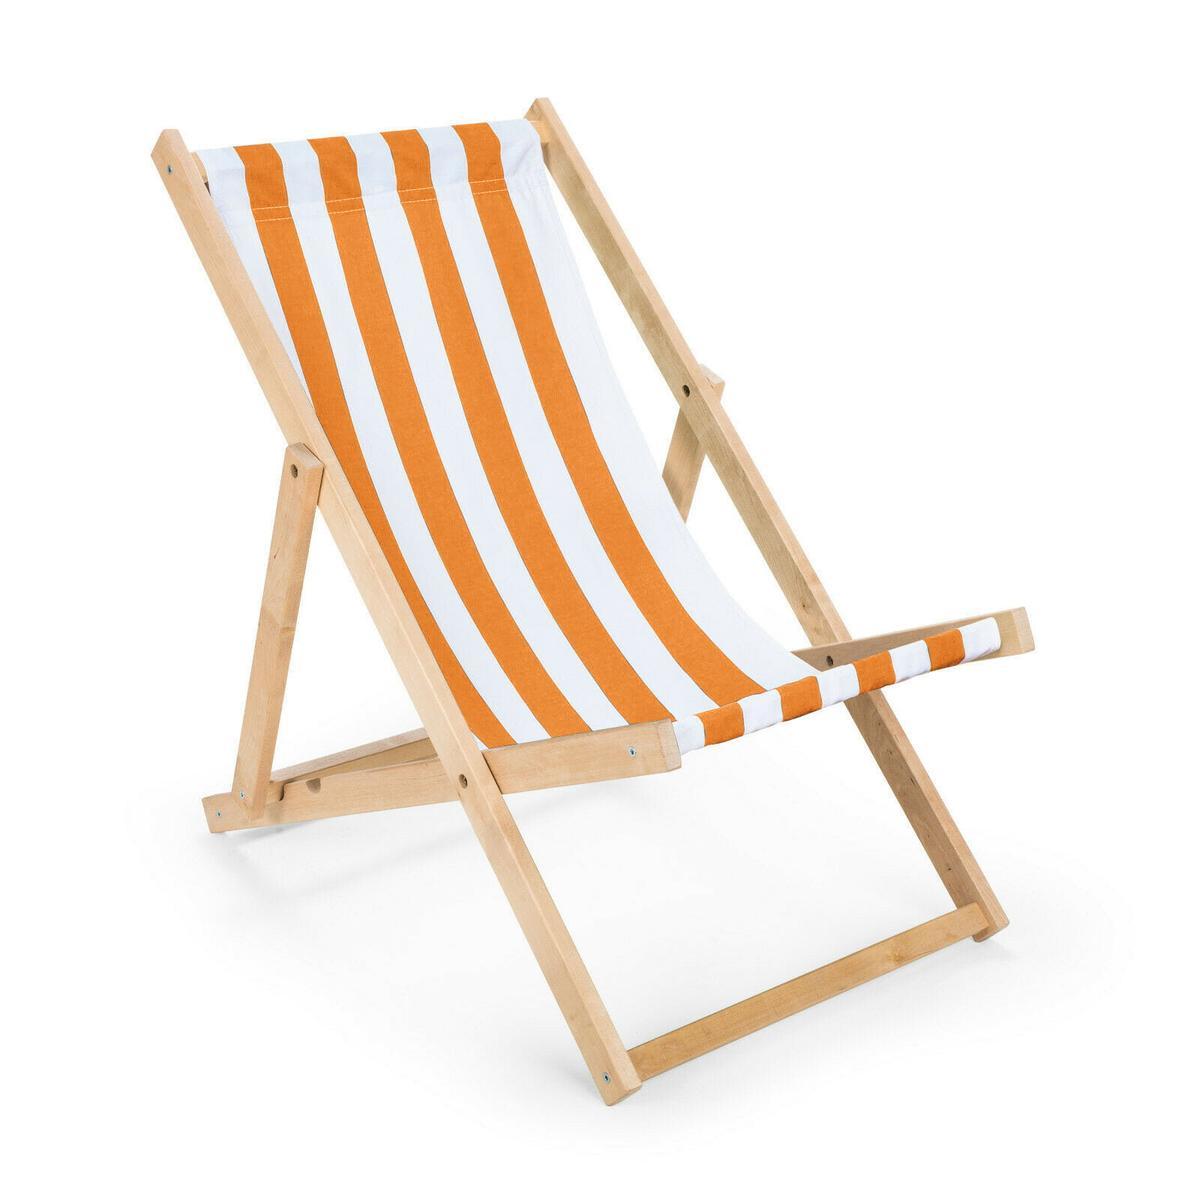 Leżak drewniany 47x112 cm ogrodowy plażowy do ogrodu pasy biało-pomarańczowe nr. 1